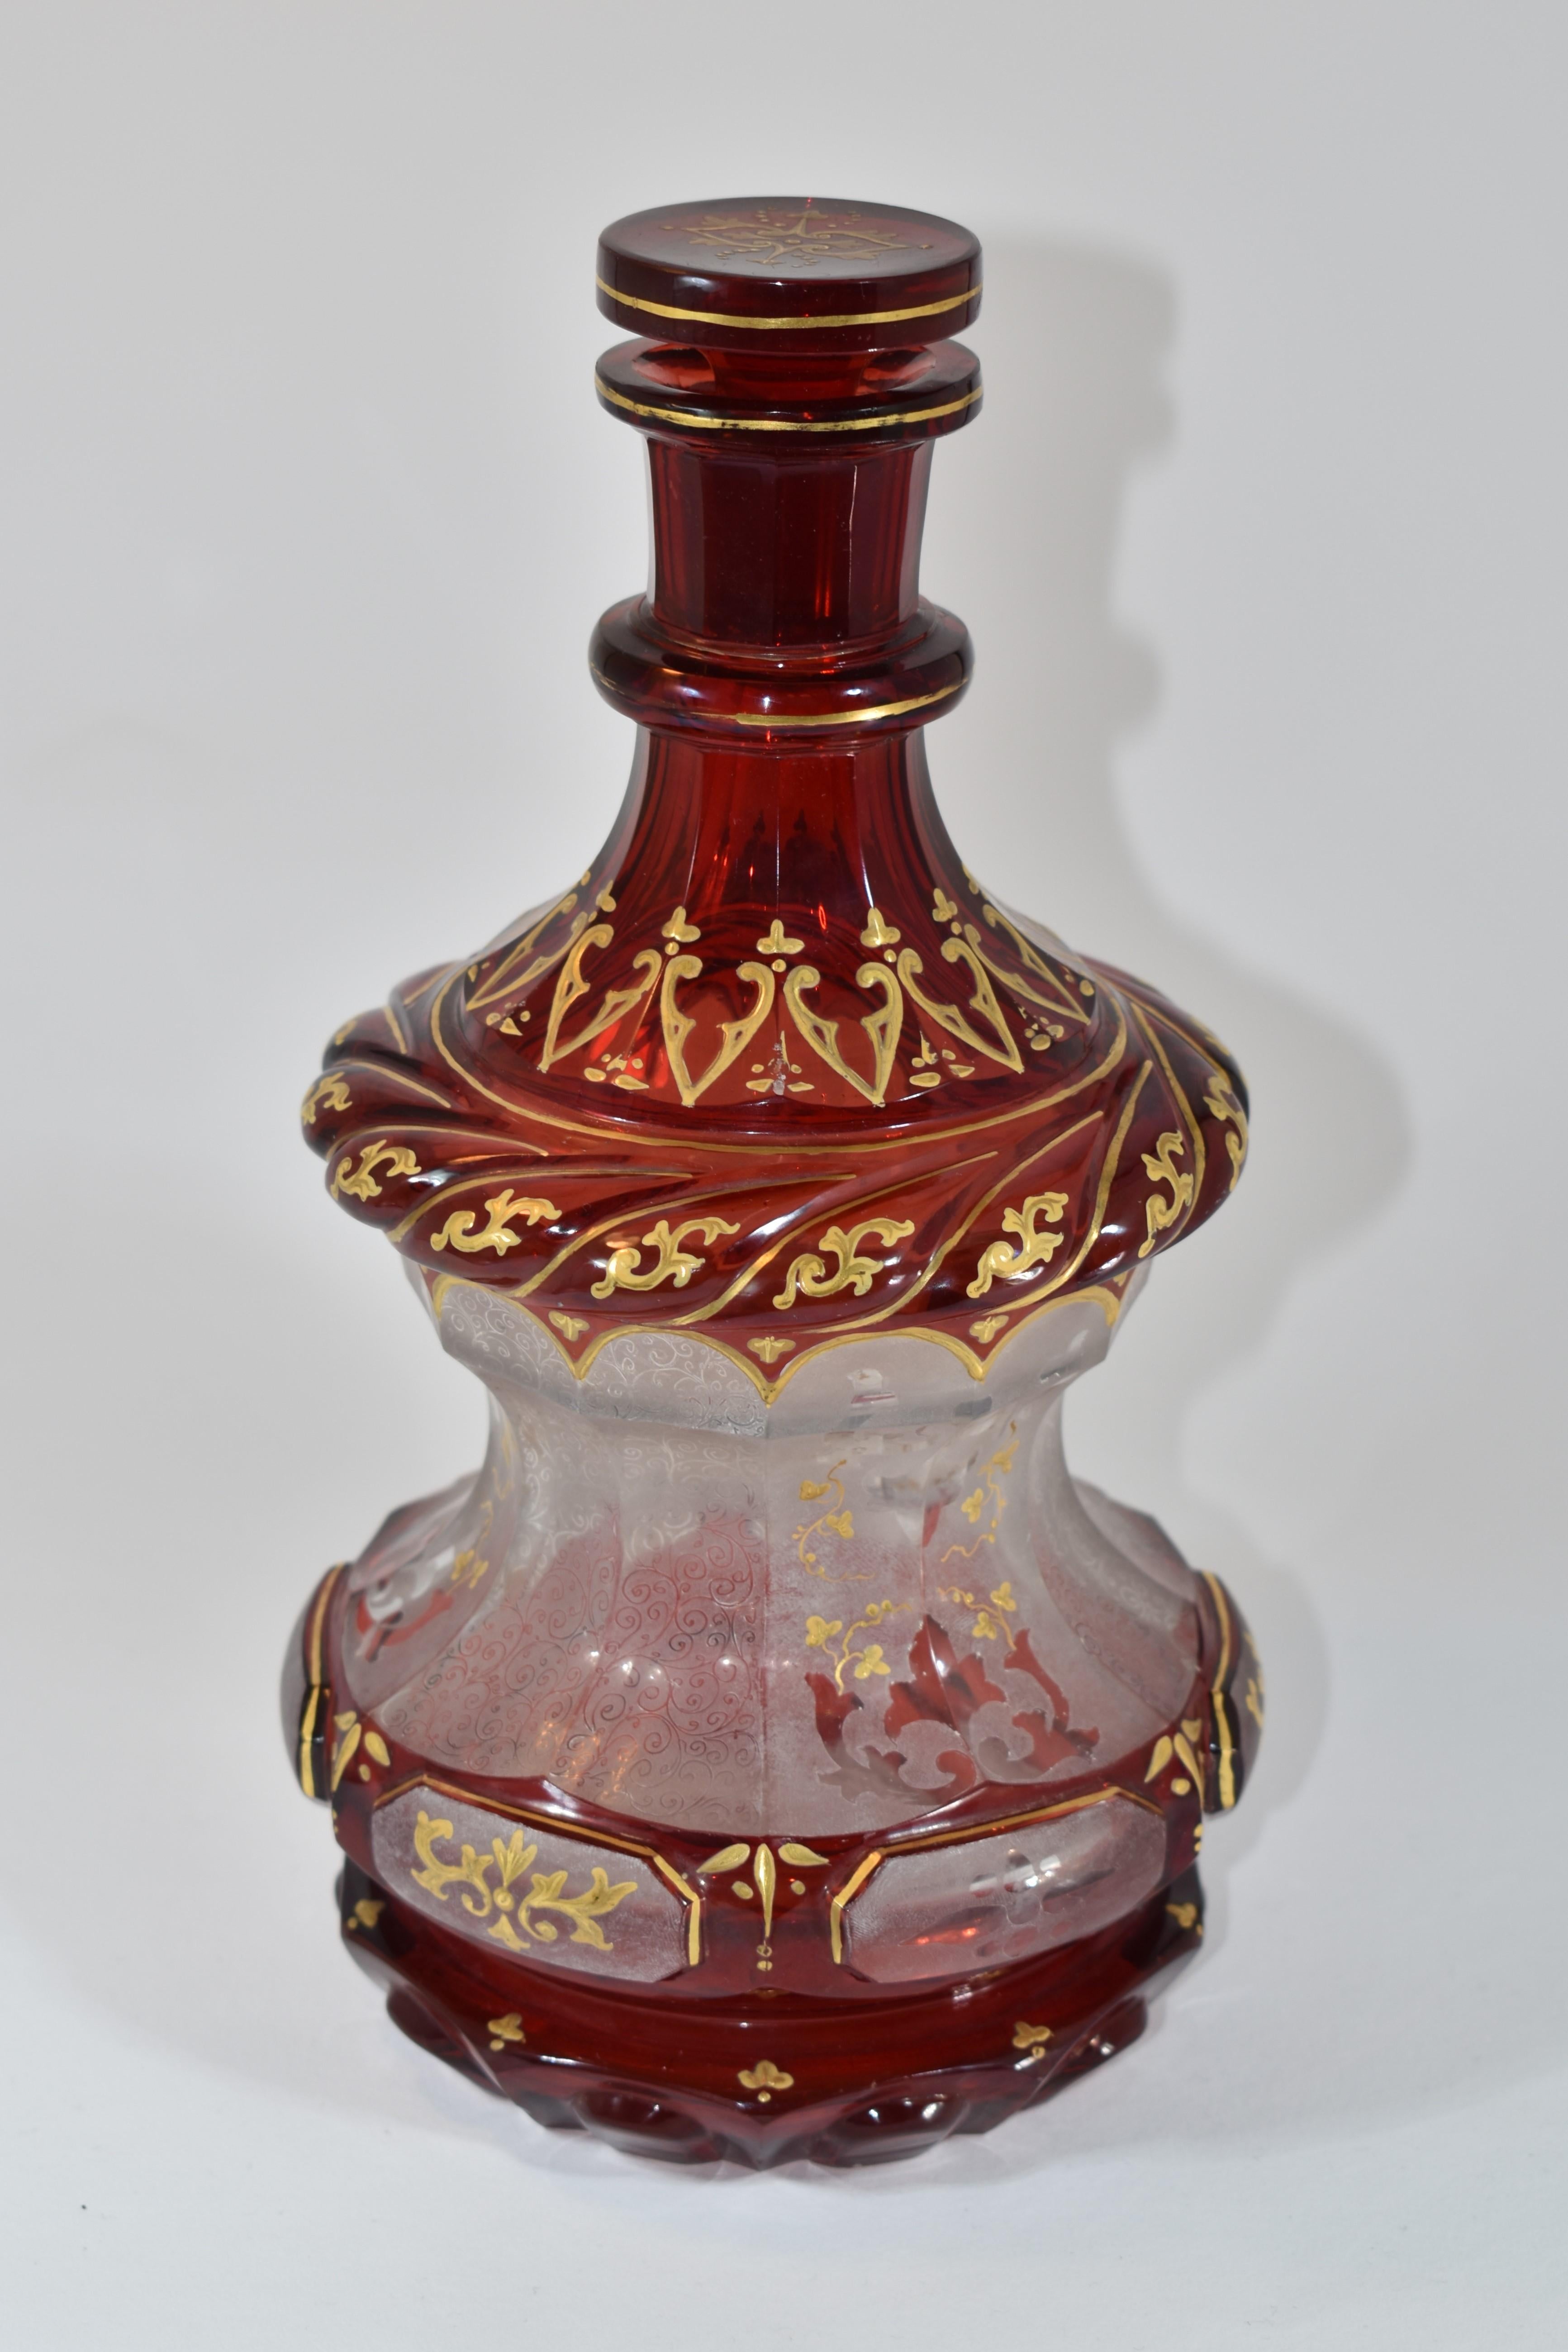 Böhmisches Glas, tief rubinrot geschliffene Glasflasche und Stopfen

verziert mit eindrucksvoller vergoldeter Emaille und feinem Malereidekor, der über und über mit Schnörkeln und geomertrischen Mustern verziert ist

ein Beispiel für die hohe